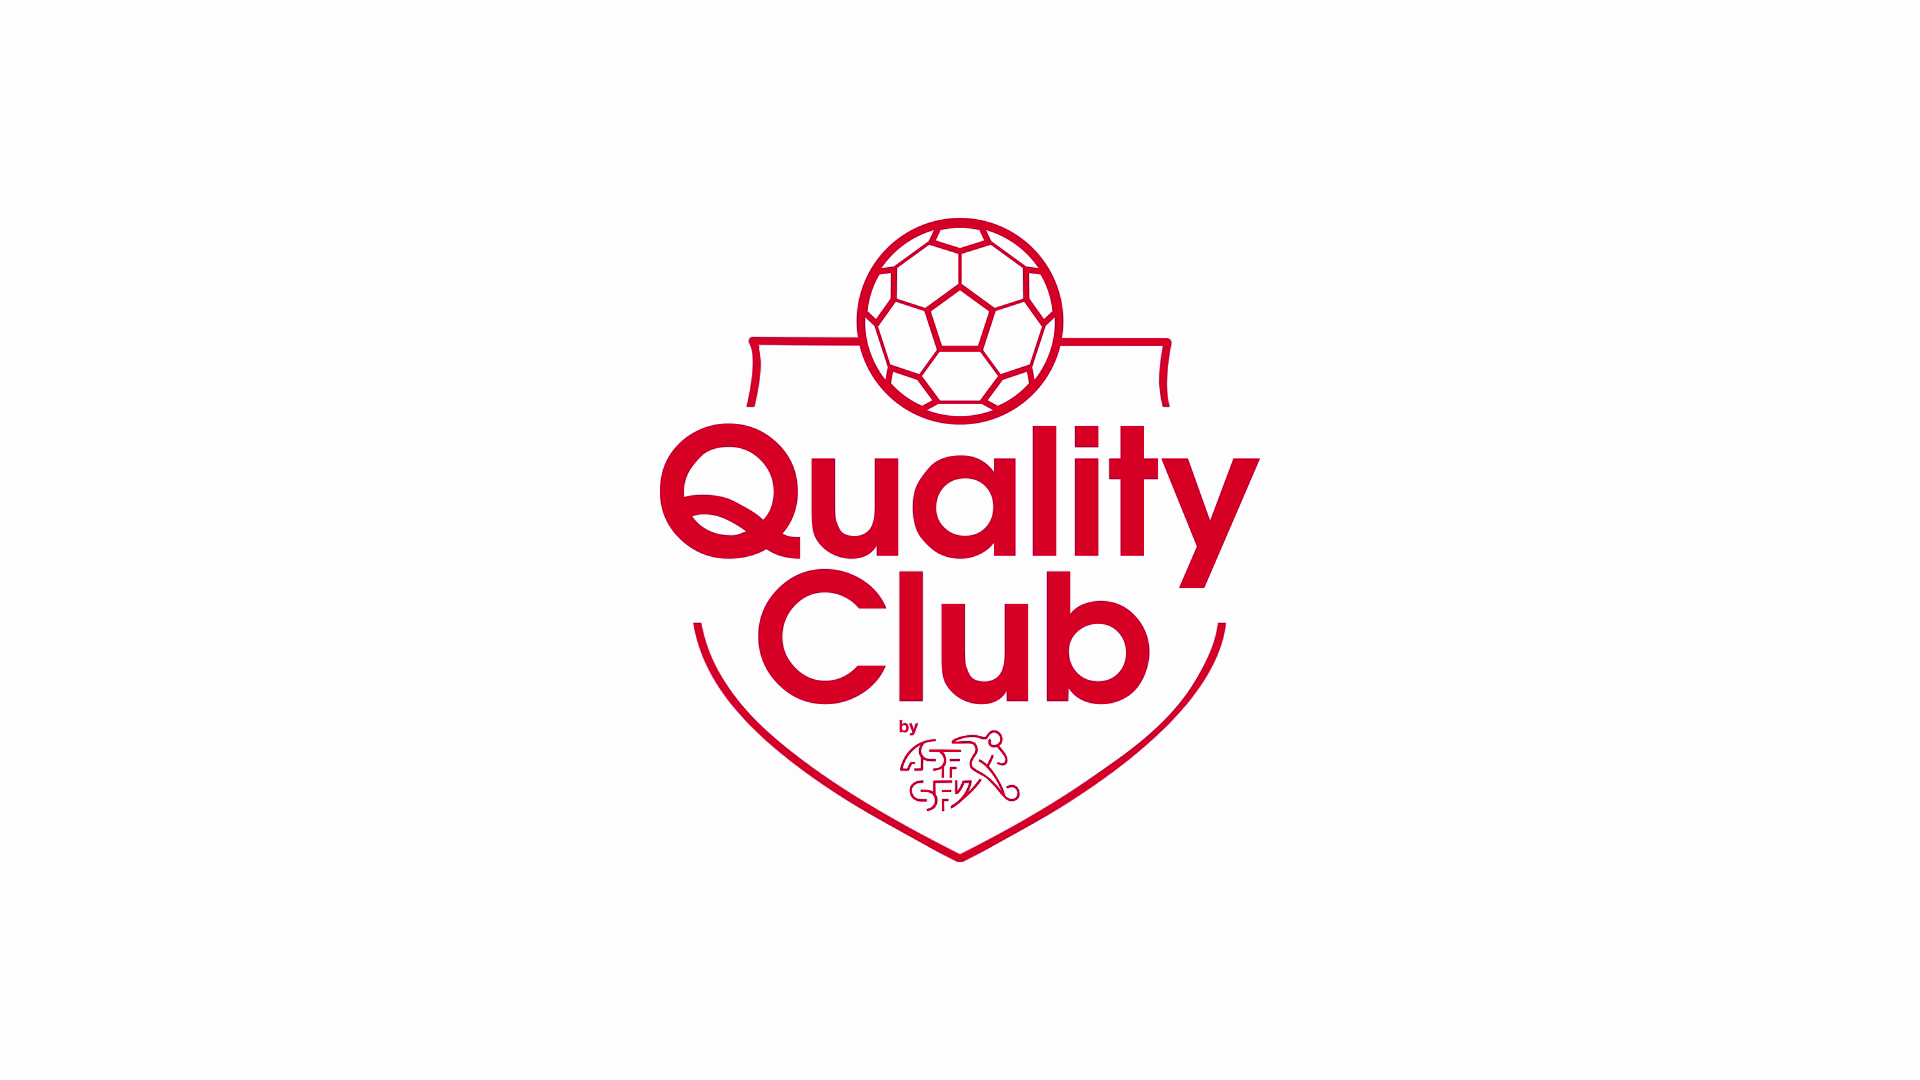 SFV Quality Club